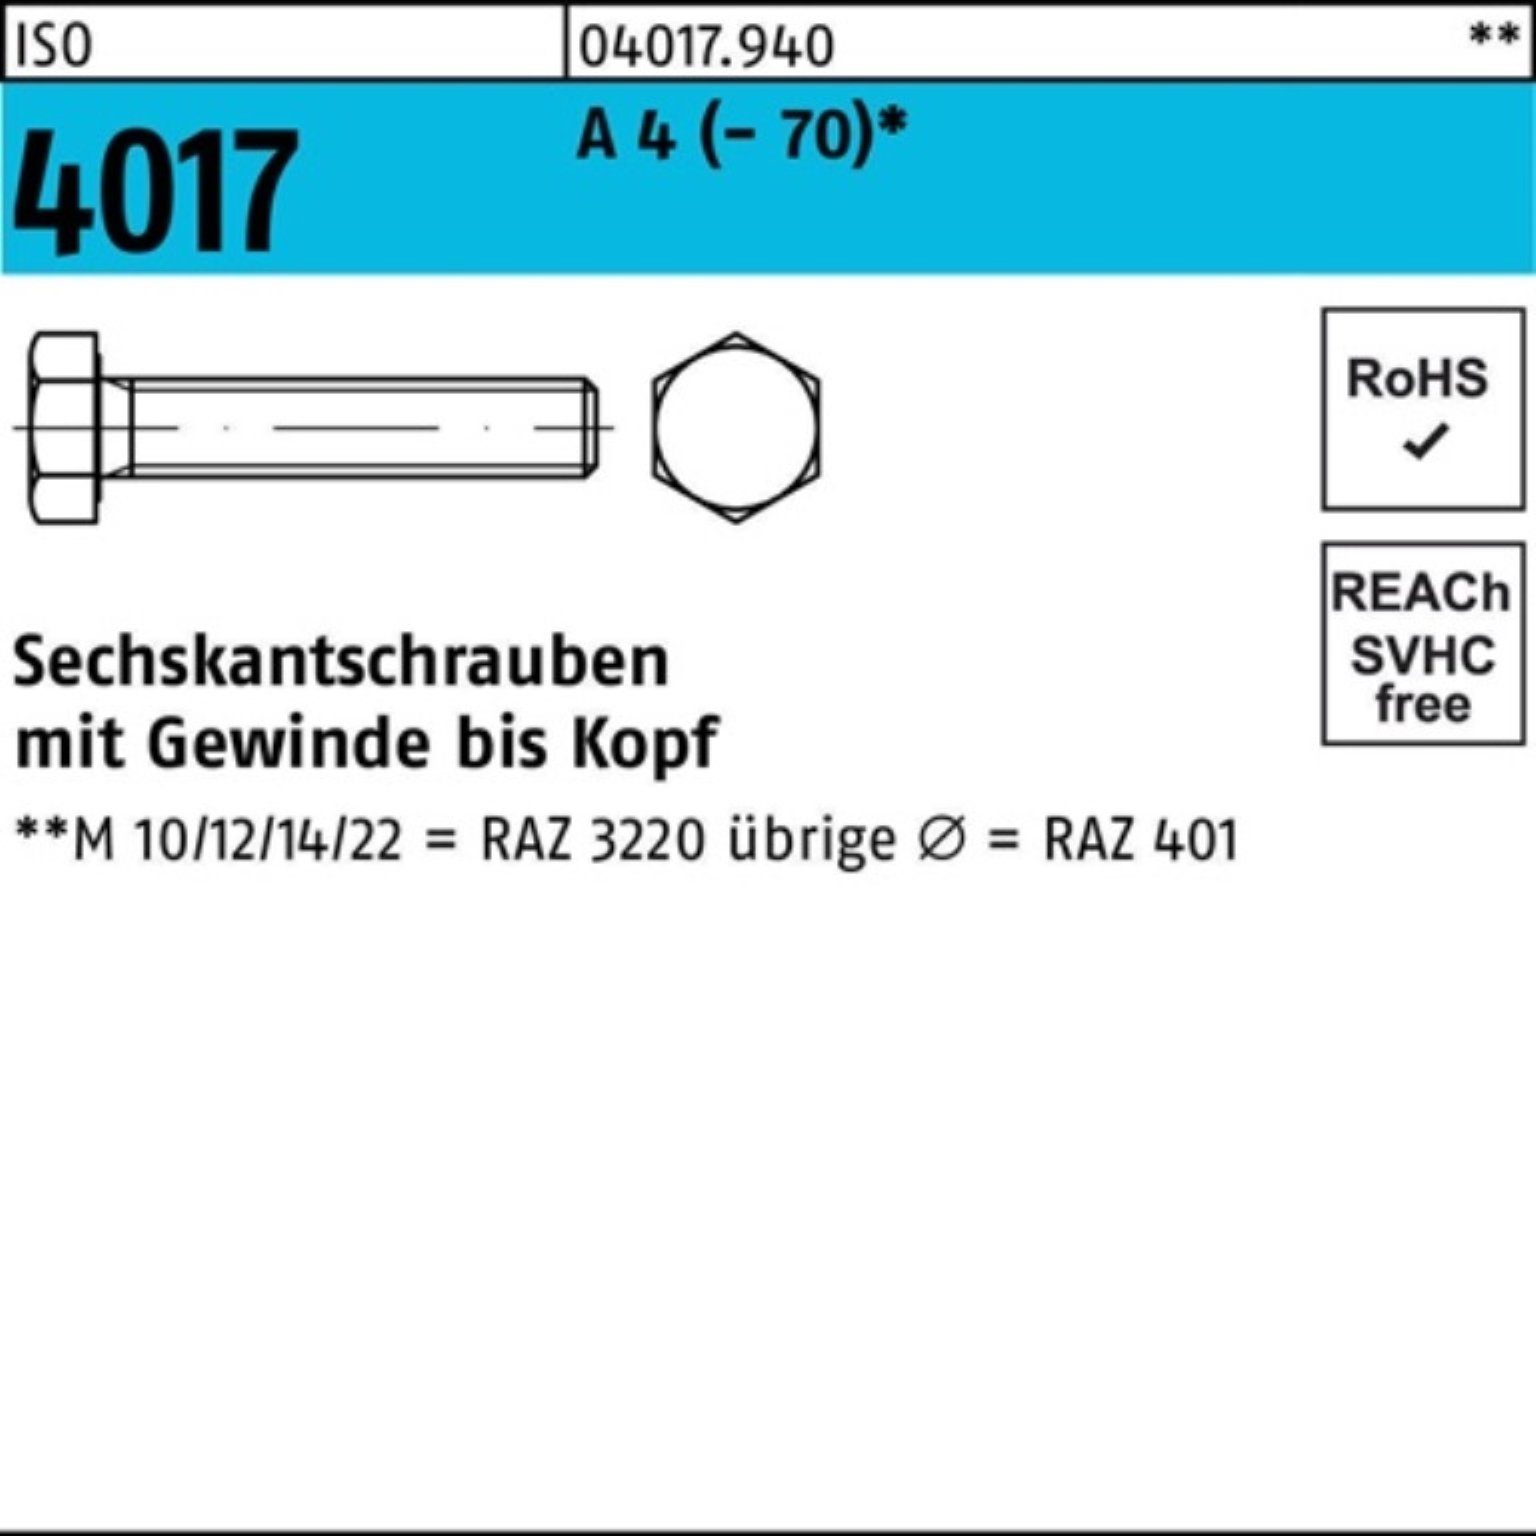 Bufab Sechskantschraube 100er Stück Sechskantschraube A 20 Pack (70) M10x ISO 100 VG 4 4017